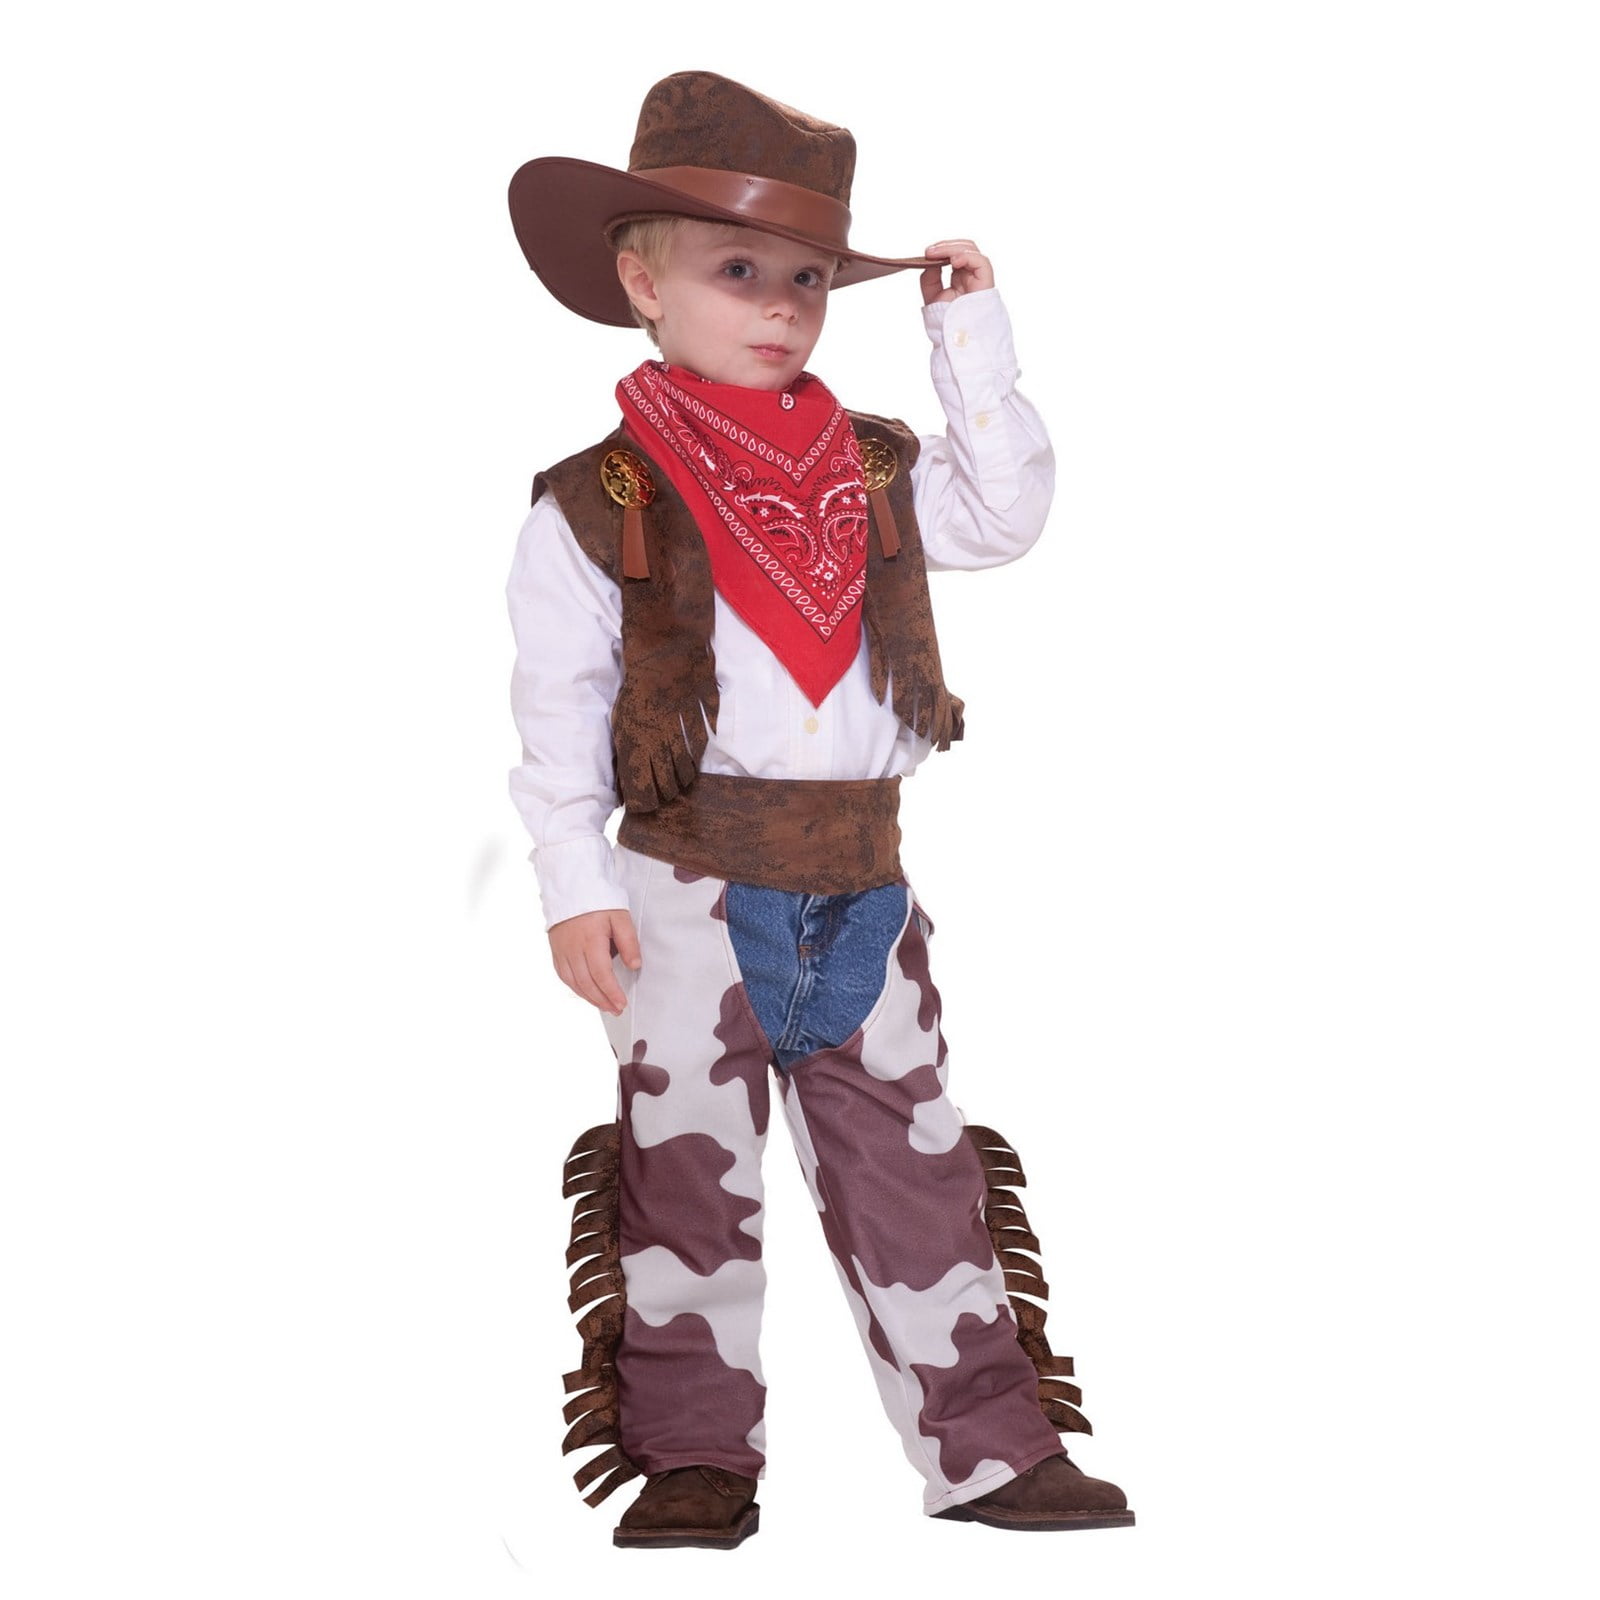 5 pcs Melissa & Doug Cowboy Role Play Costume Set Includes Faux Leather Chaps